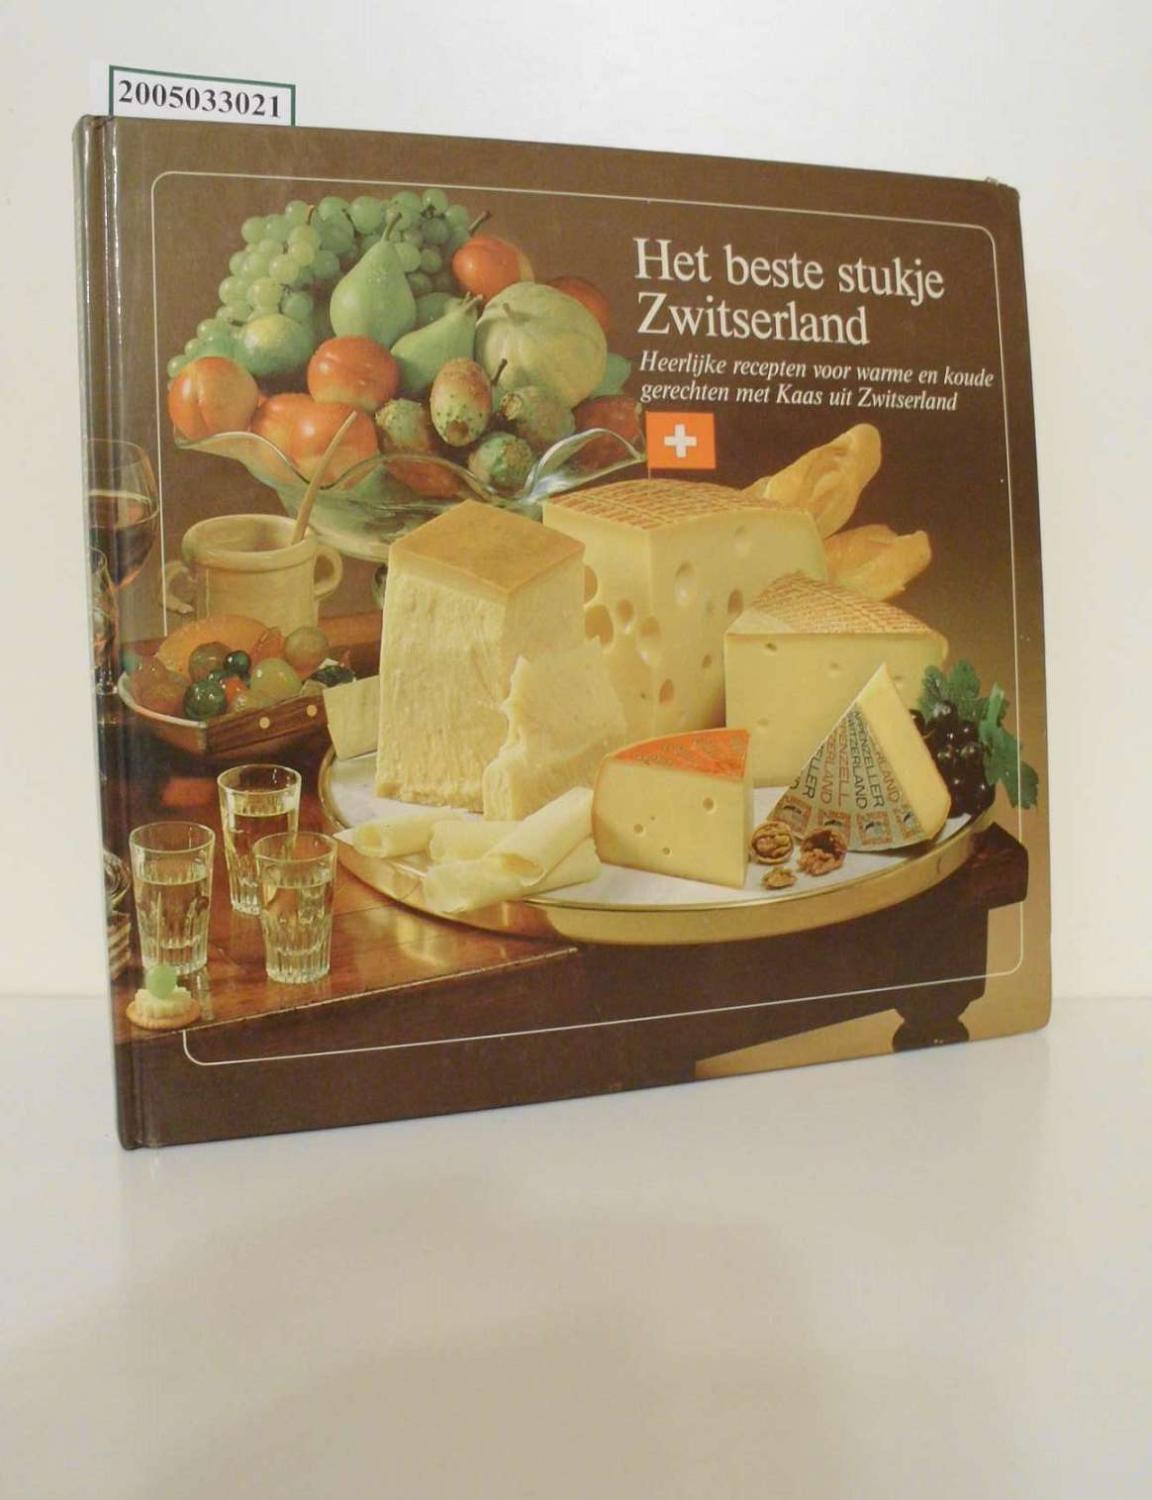 Het beste stukje Zwitserland / Uitgezocht door de Schweizerische Käseunion AG Heerlijke recepten voor warme en koude gerechten met Kaas uit Zwitserland